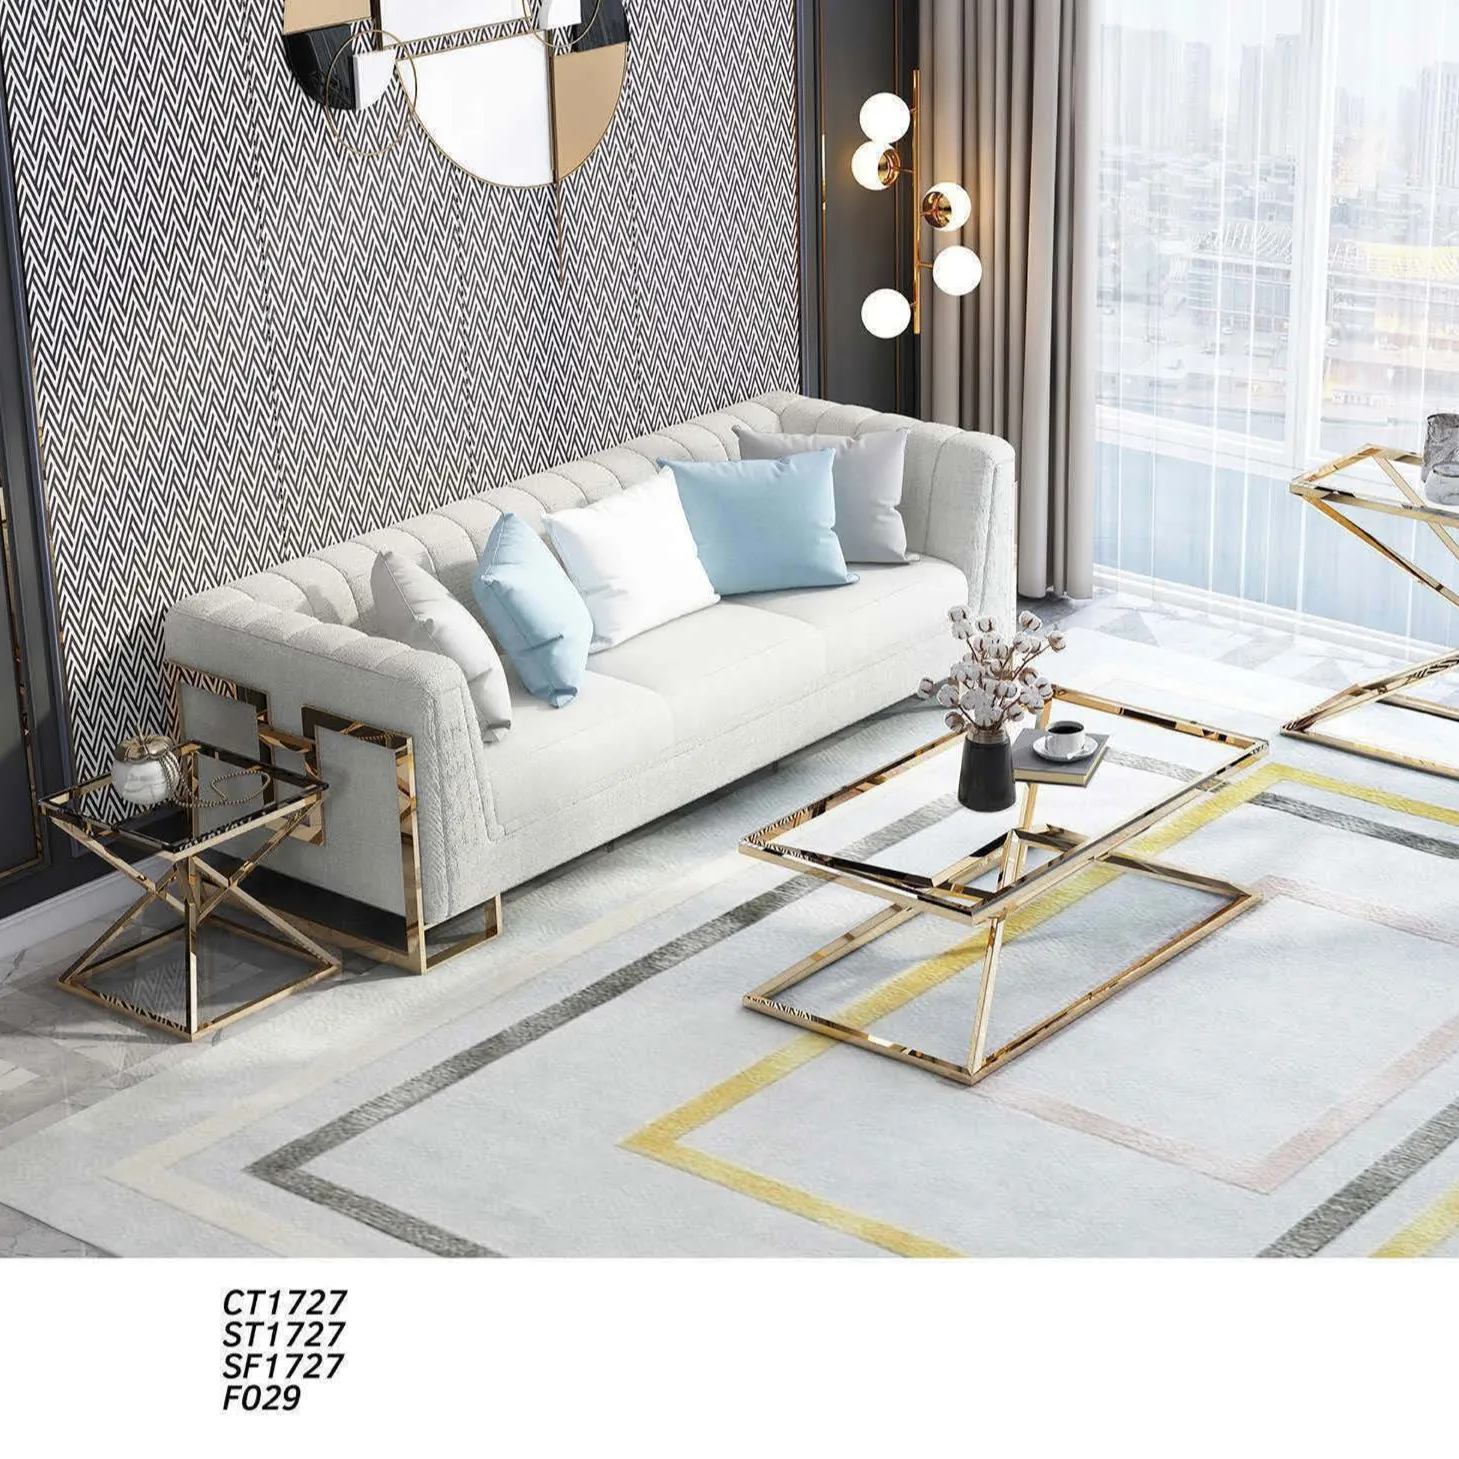 Baixo preço garantido qualidade minimalista modular sofá moderno